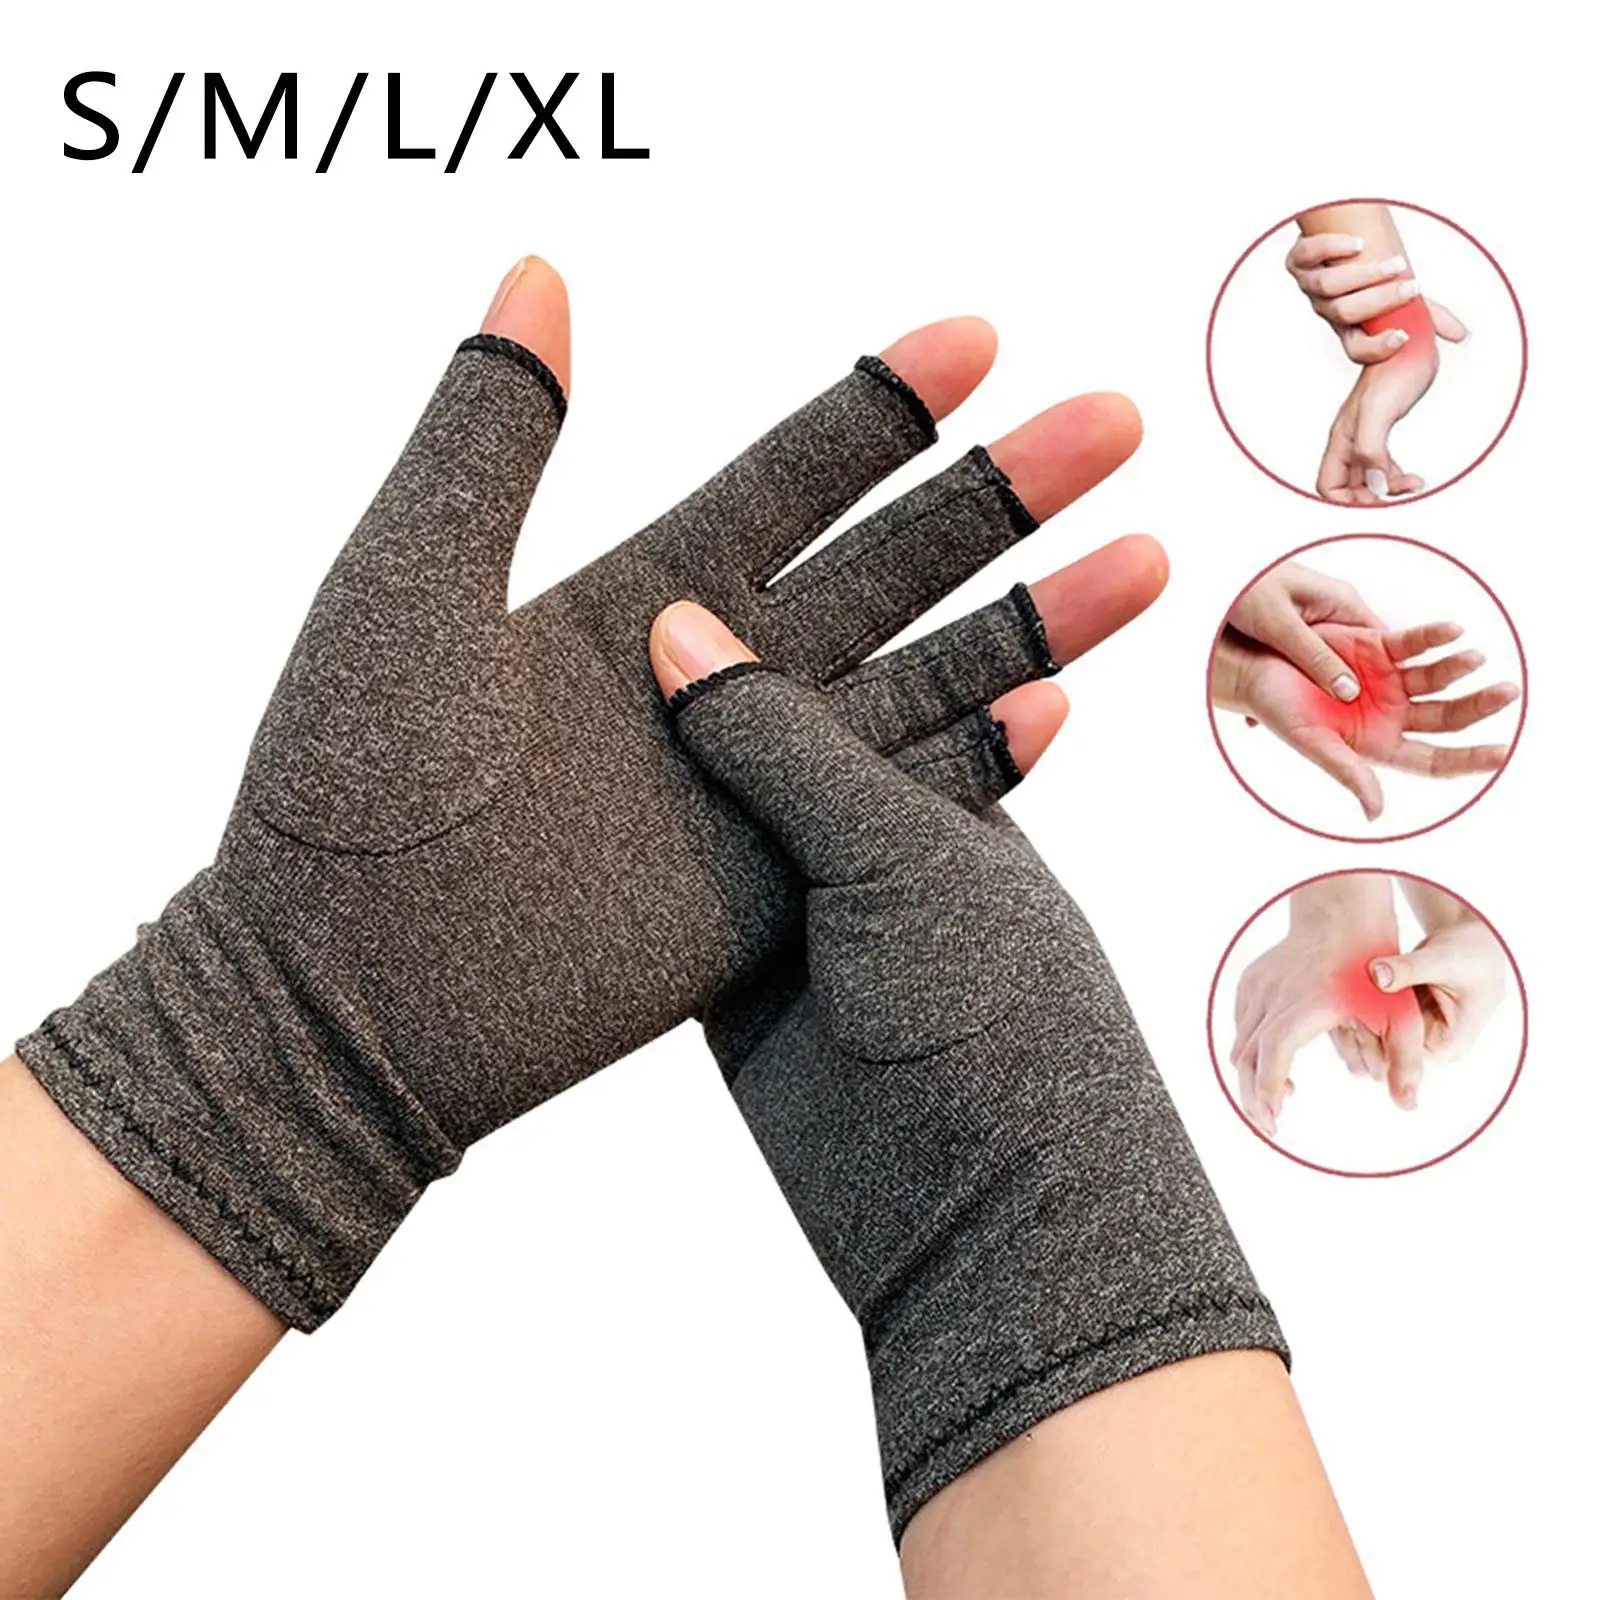 Arthritis Gloves, Compression Gloves for Hands and Fingers, Arthritis Gloves for